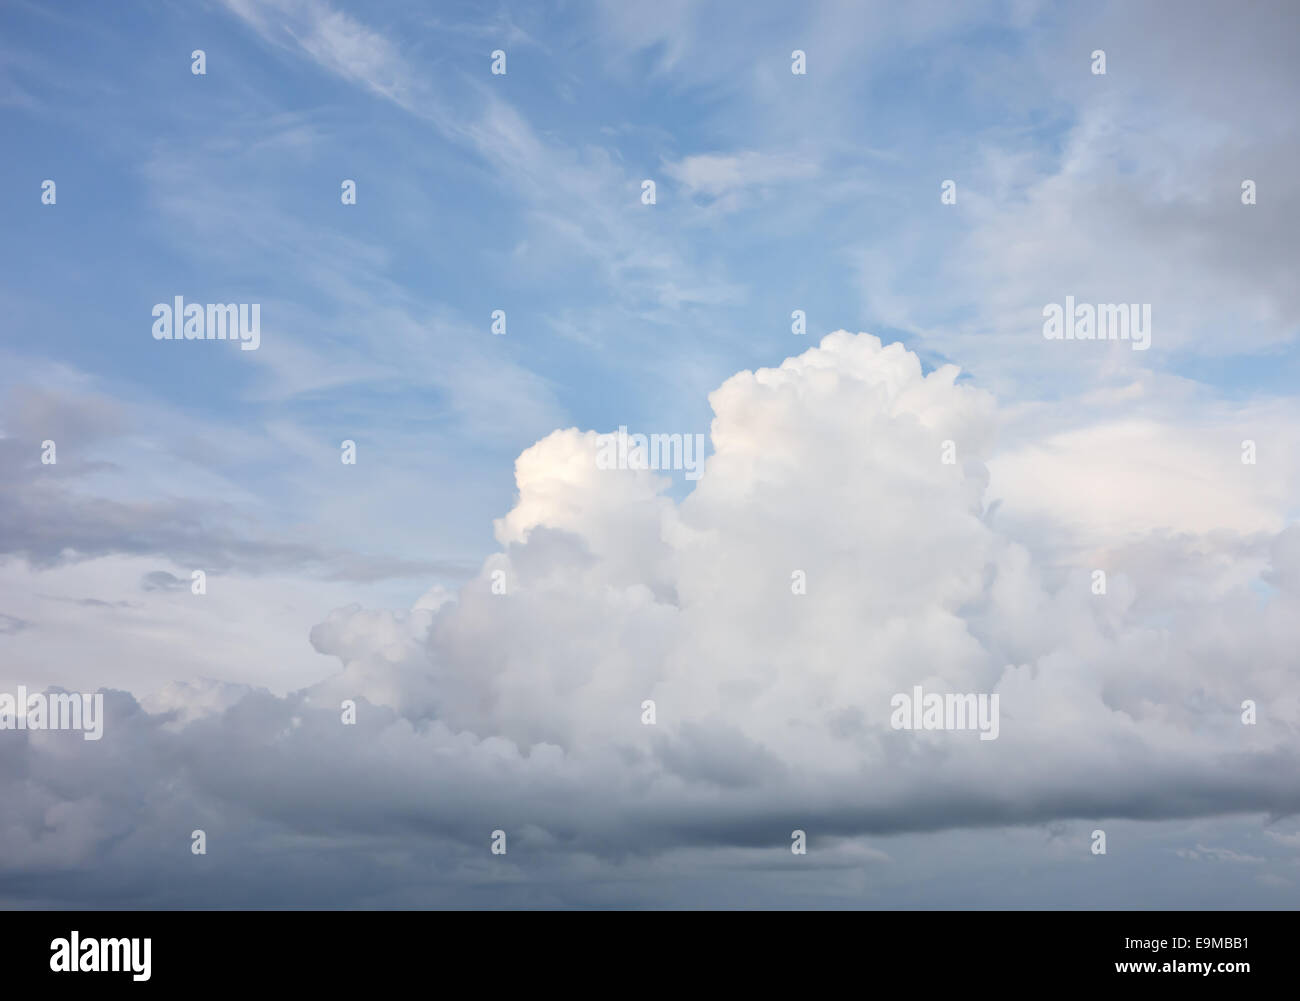 rainy cloudy sky Stock Photo